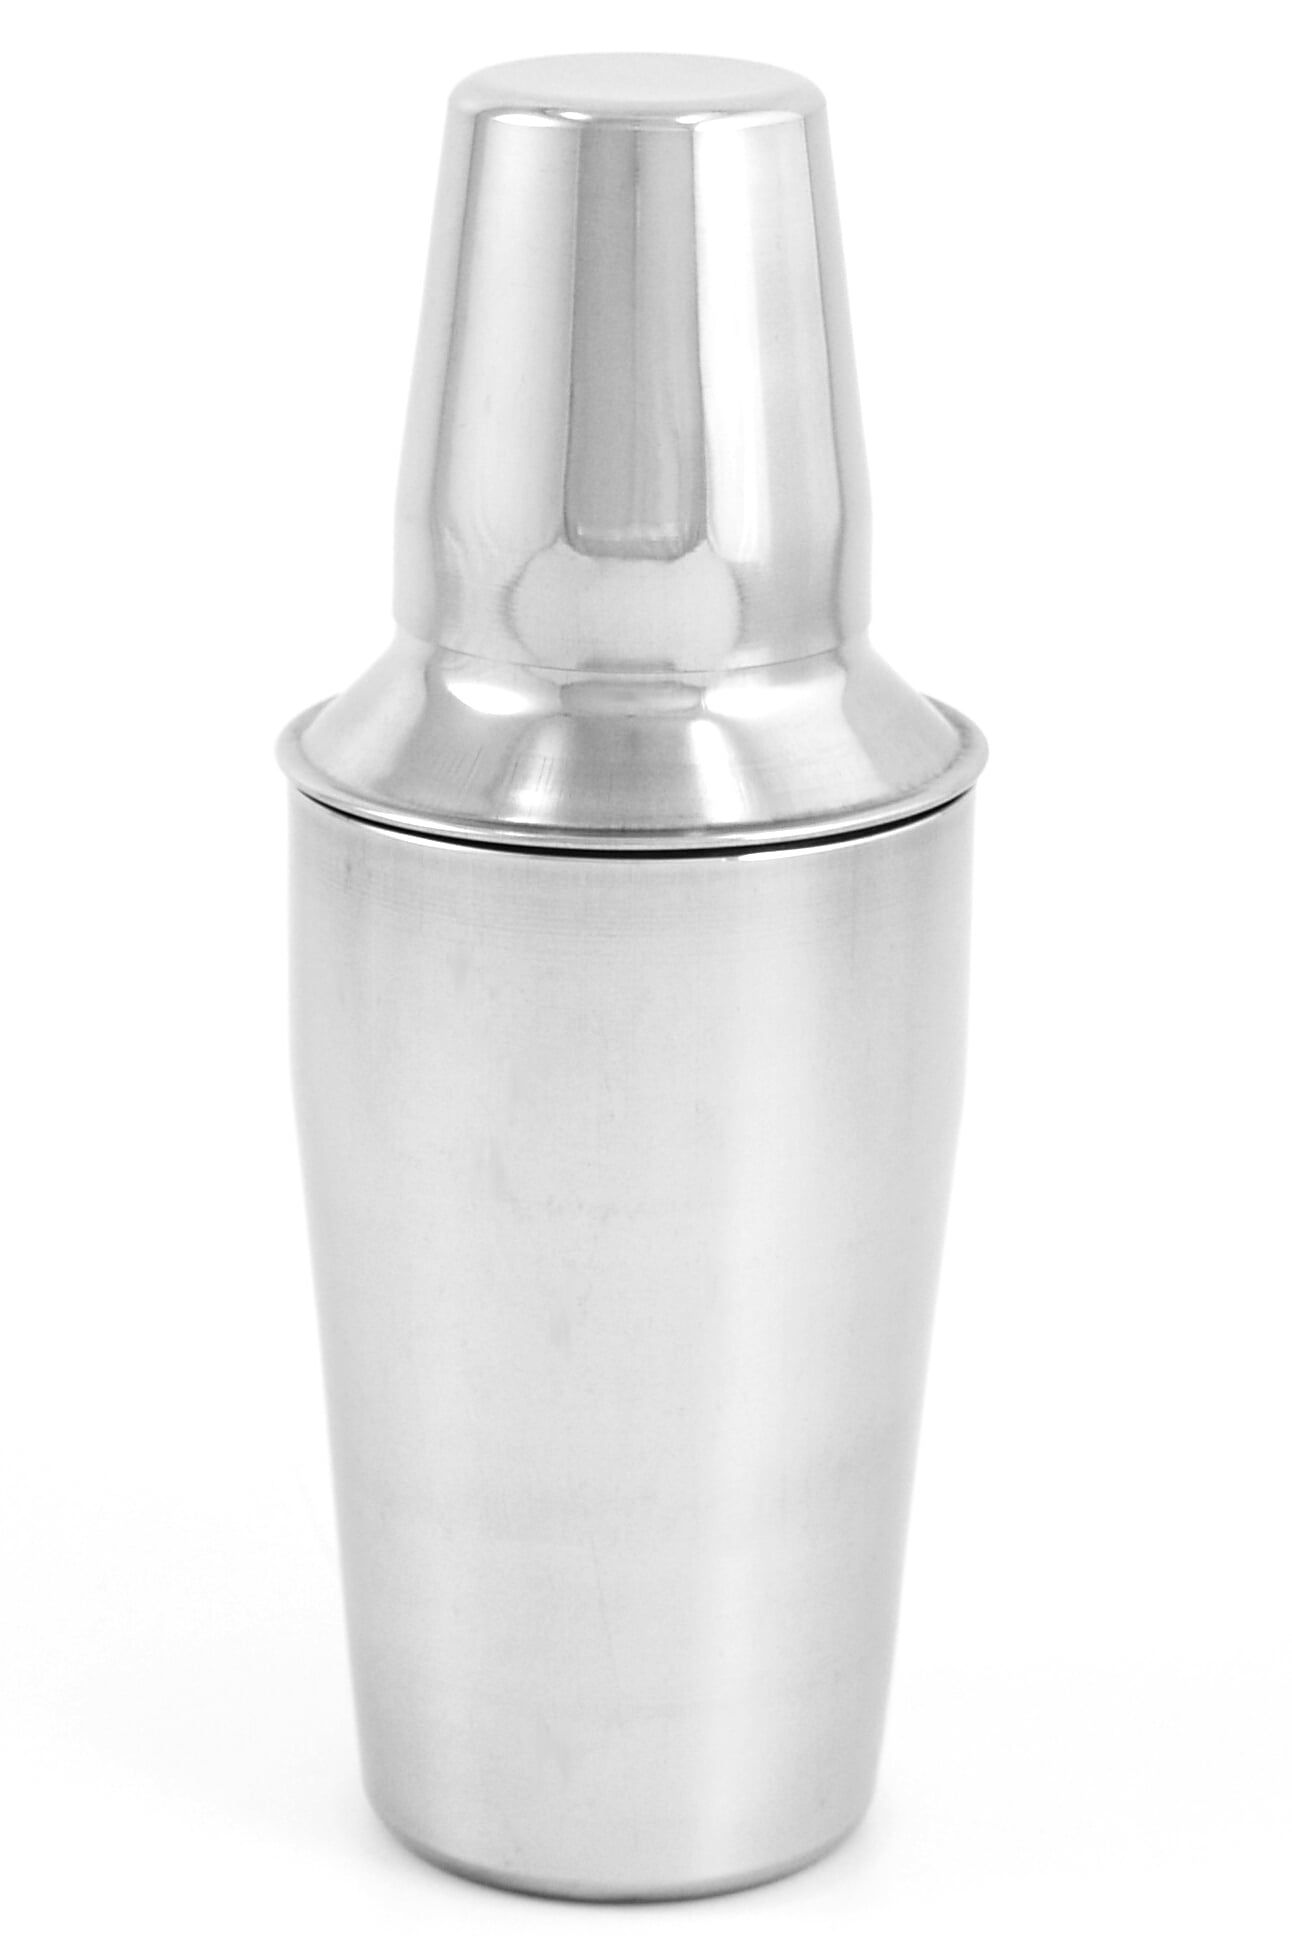 10 oz Mini STAINLESS Boston SHAKER Cocktail Mixer Tin & Measuring Glass Jigger 